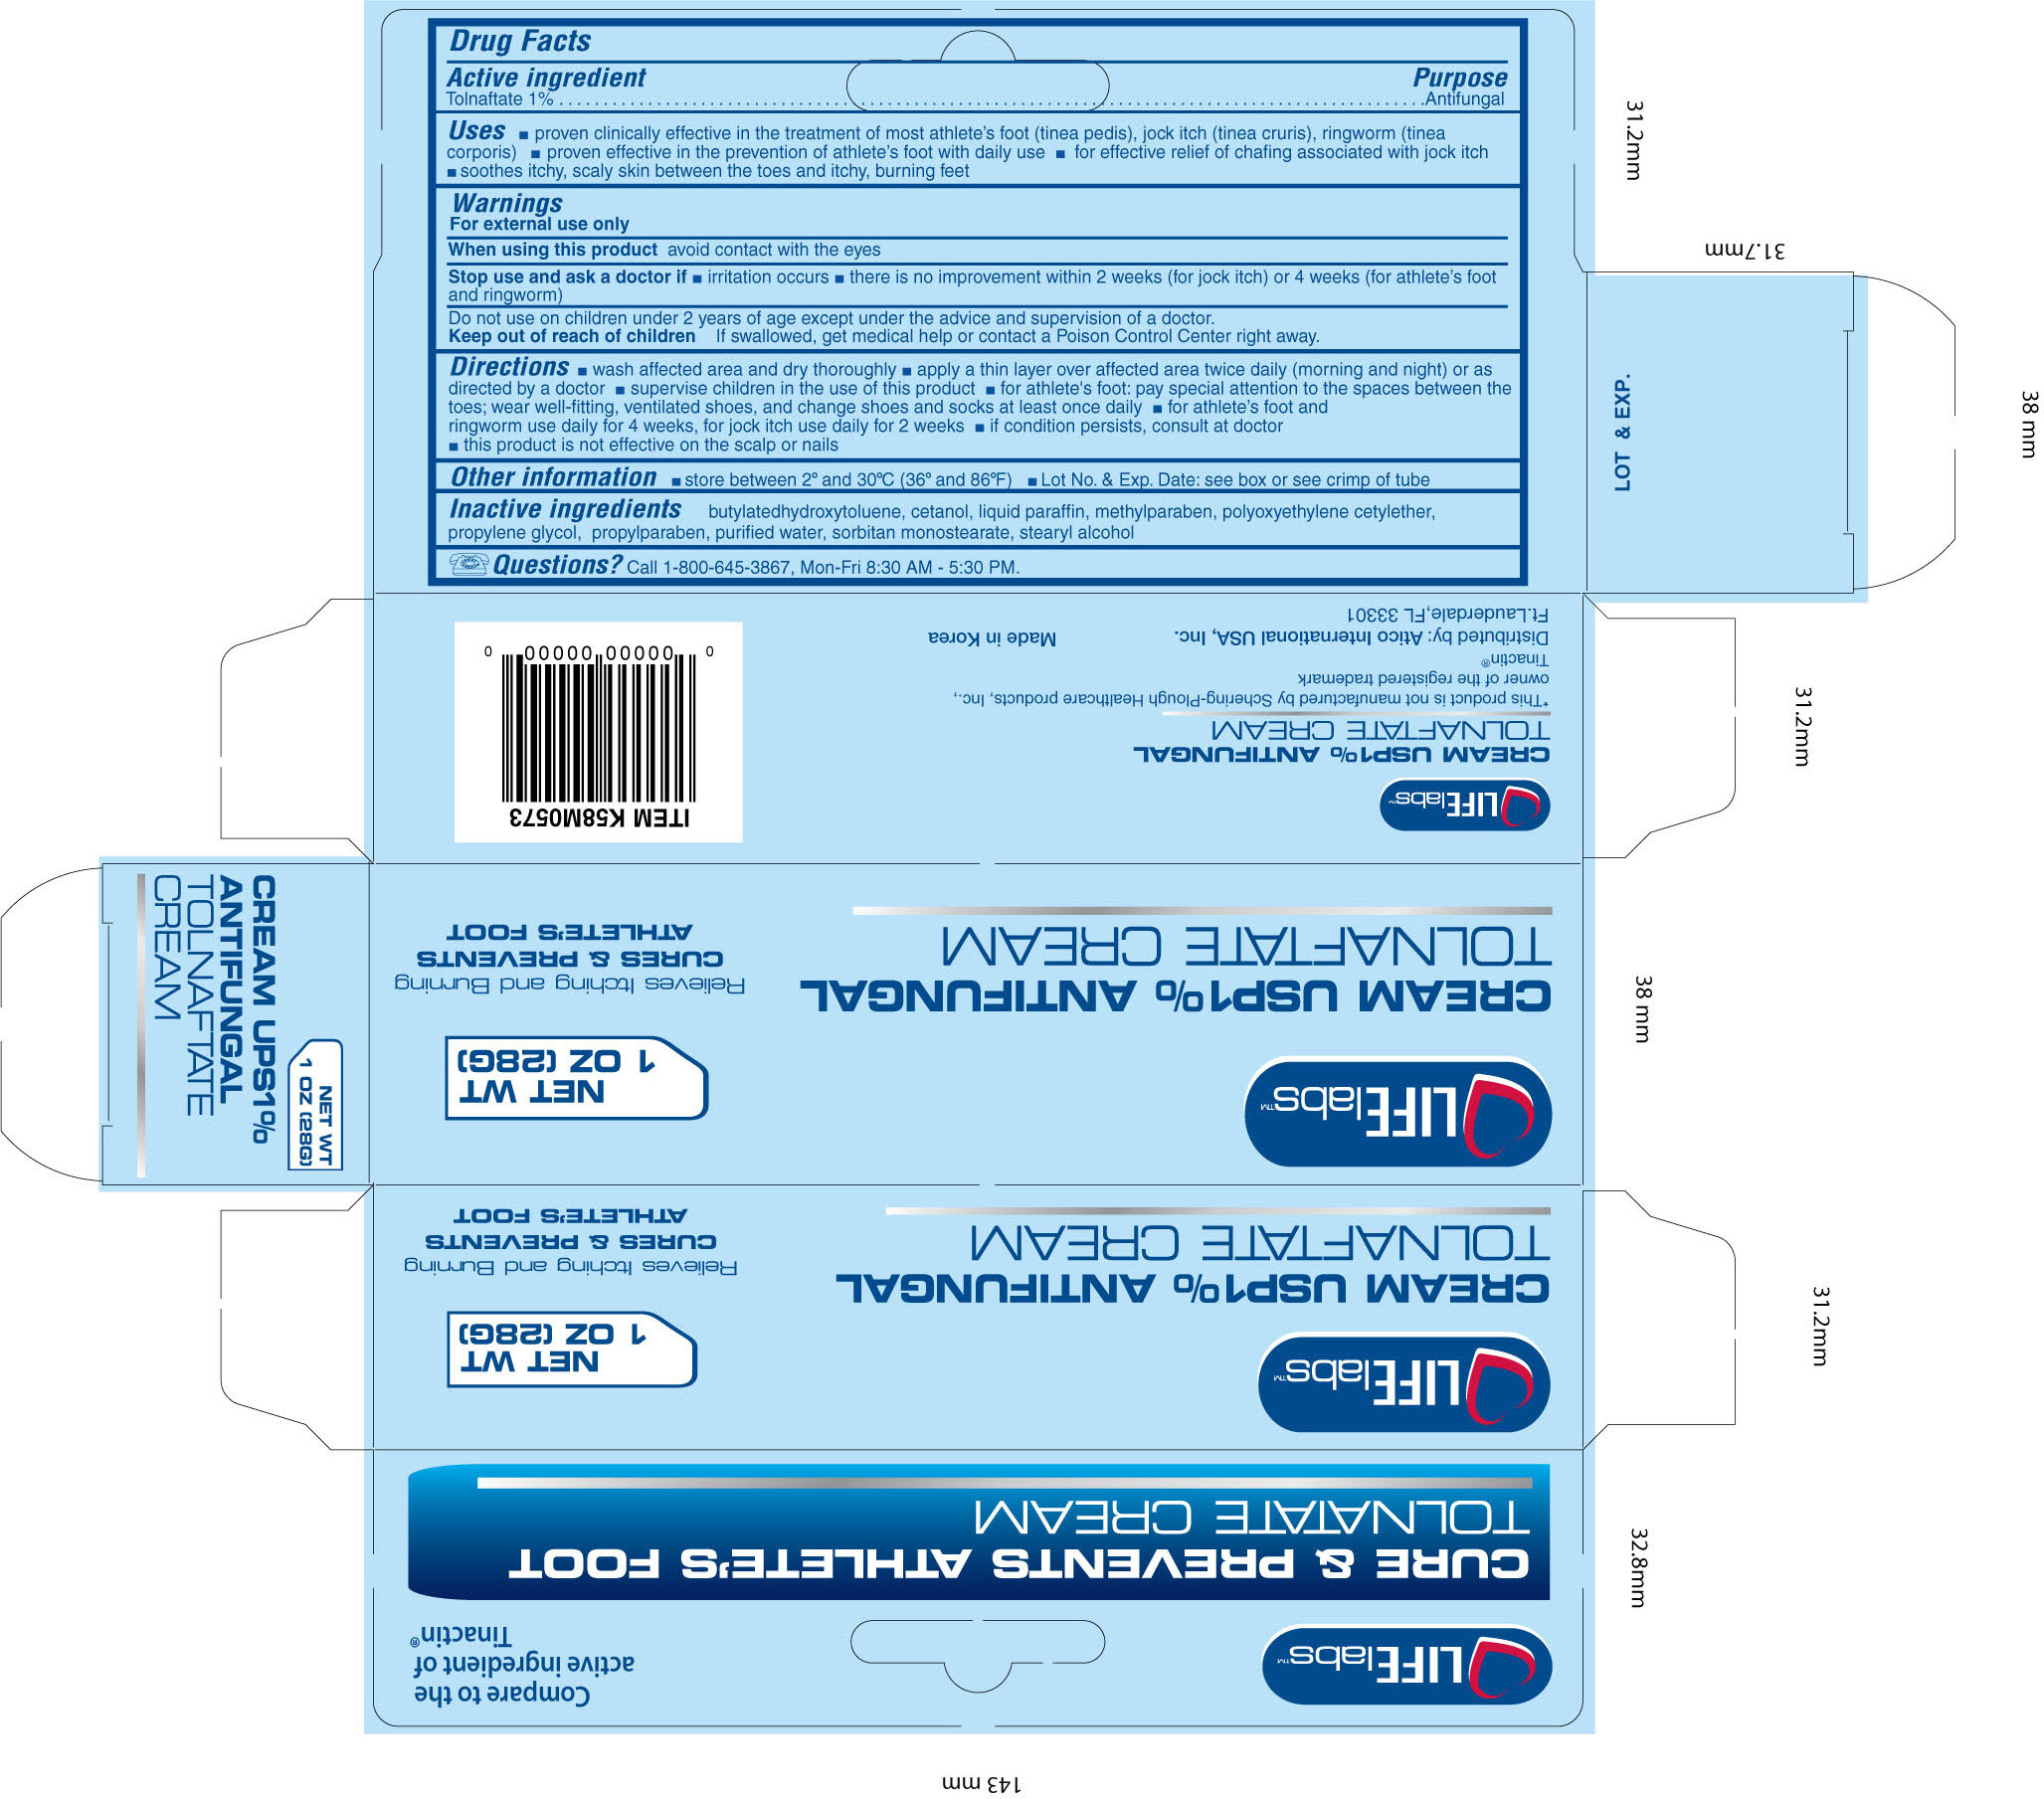 Image of Tolnaftate Cream Carton Label